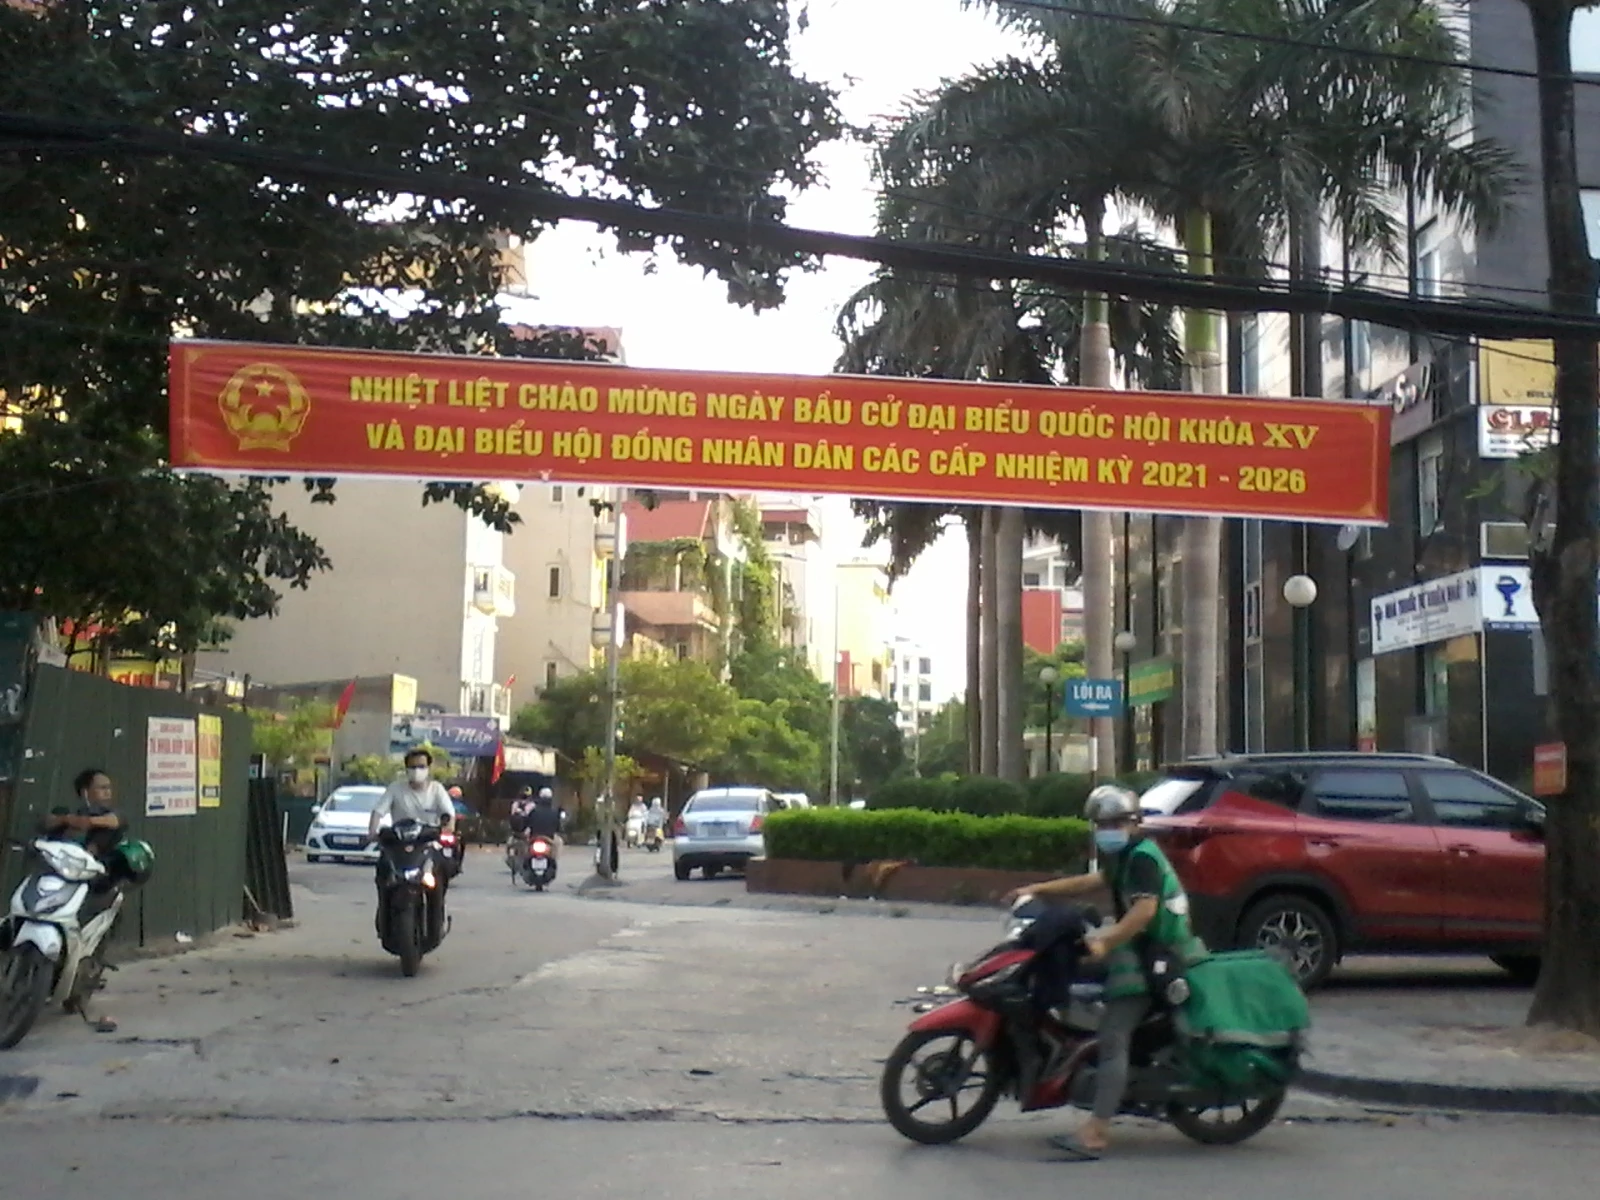 Trên đường phố các banner cổ động tuyên truyền cho Ngày hội toàn dân cũng được lắp đặt tại nhiều nơi, để mọi người dân có thể dễ dàng quan sát được, nắm bắt thông tin.